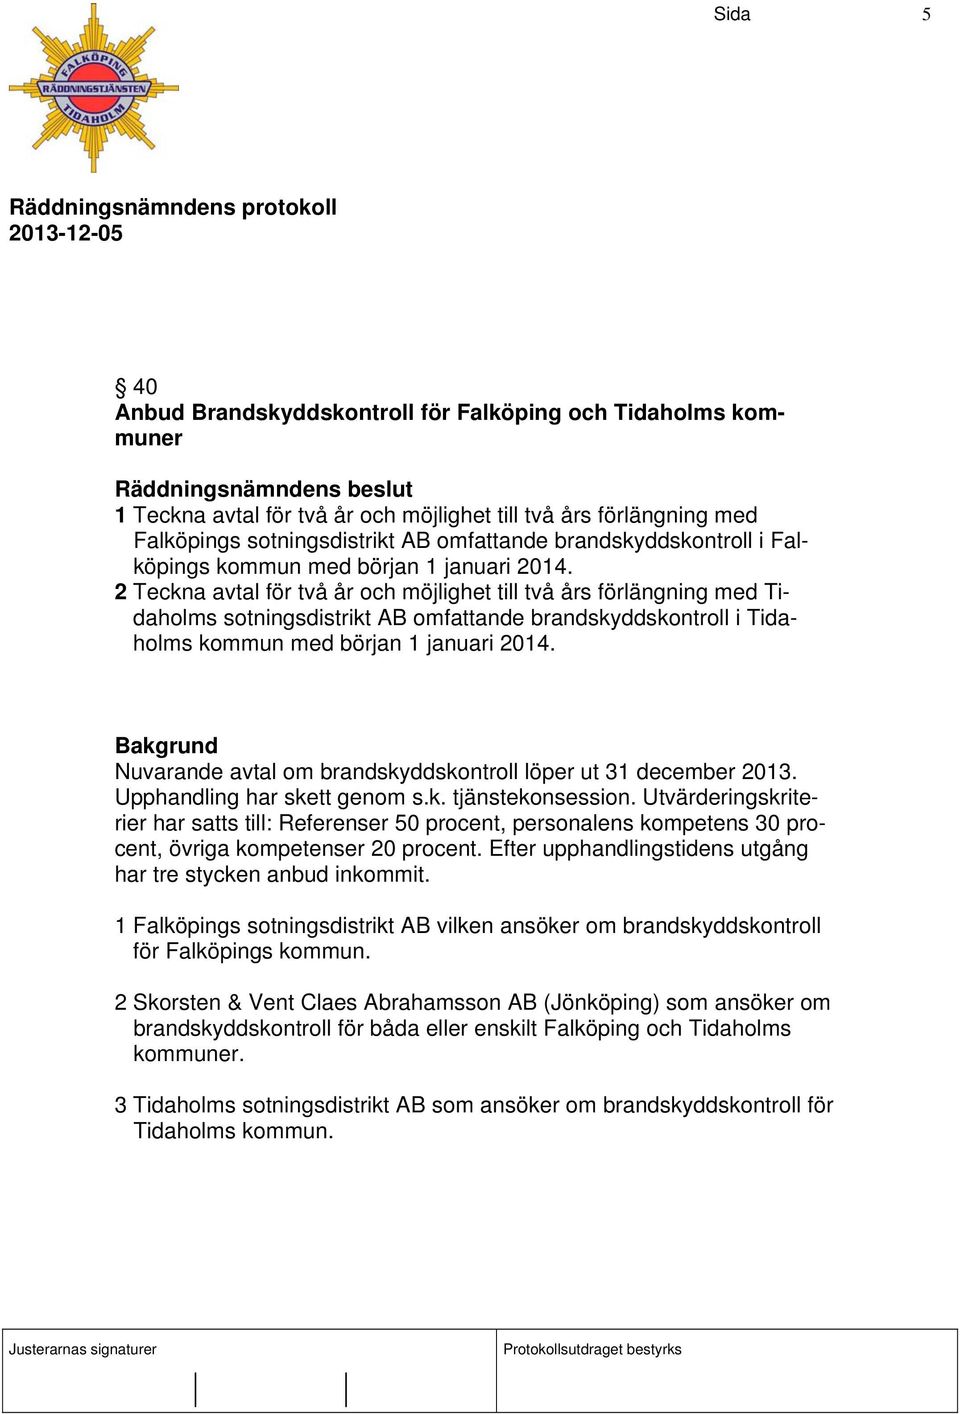 2 Teckna avtal för två år och möjlighet till två års förlängning med Tidaholms sotningsdistrikt AB omfattande brandskyddskontroll i Tidaholms kommun med början 1 januari 2014.